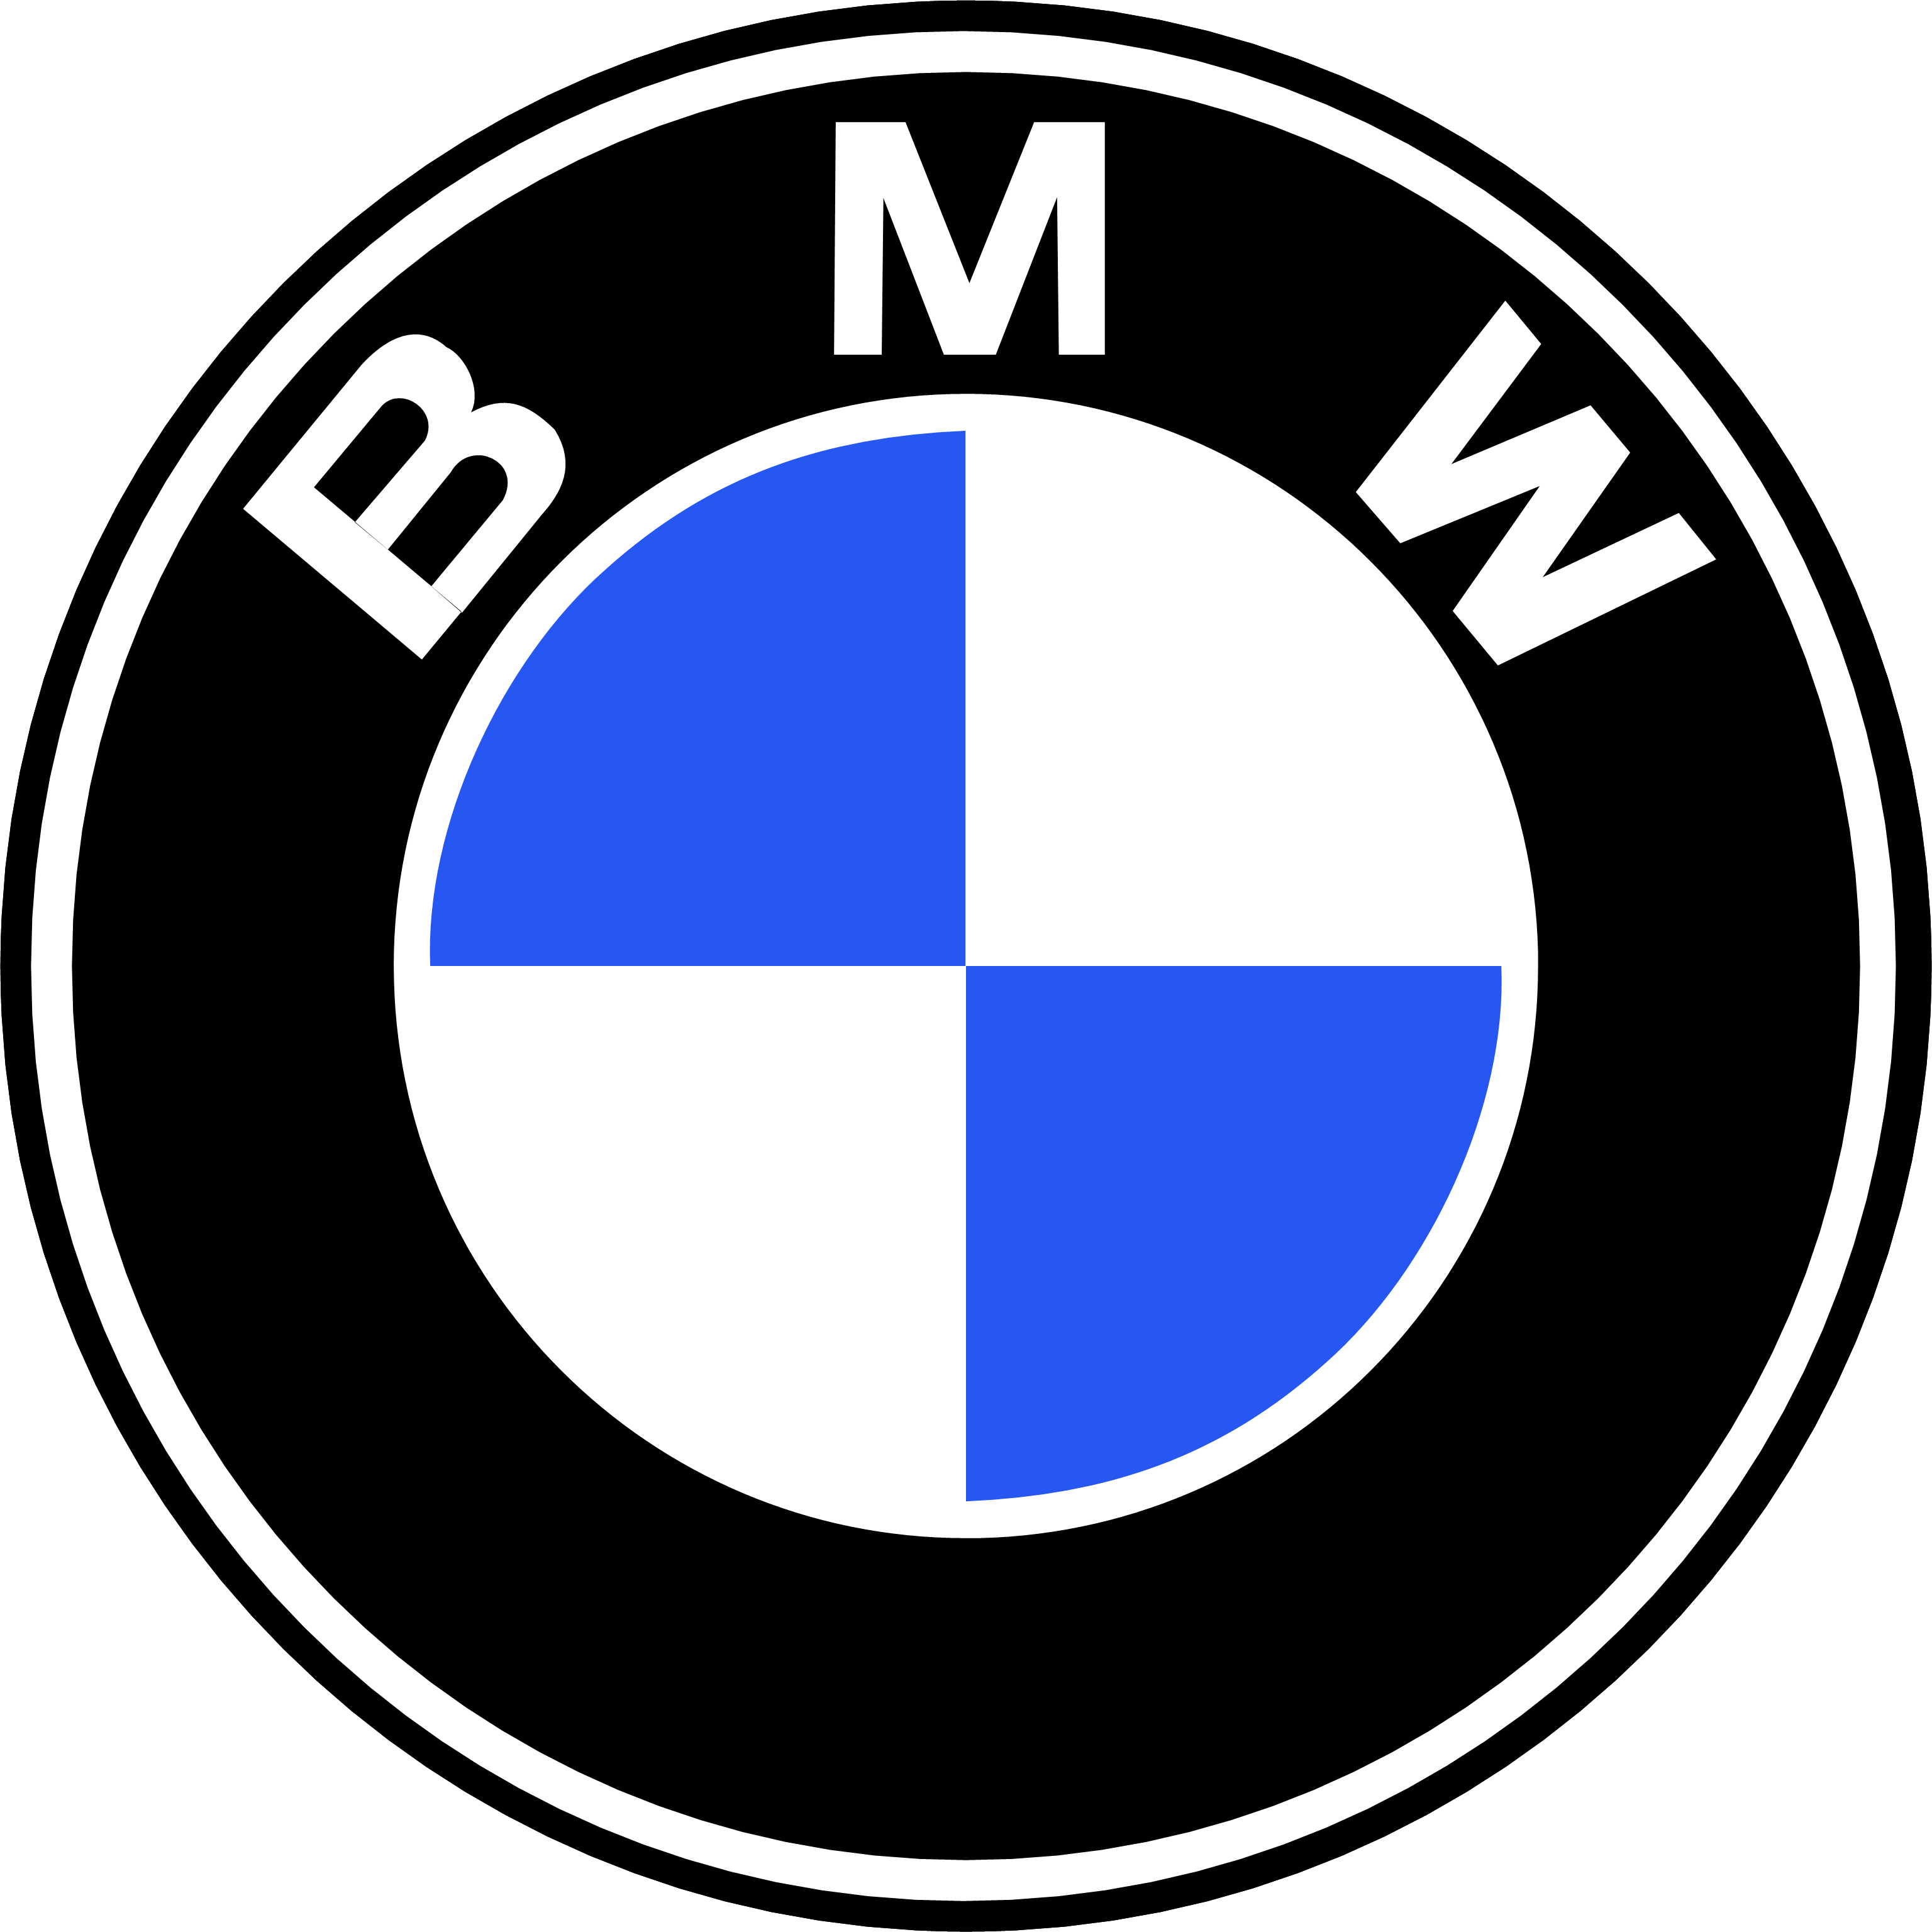 Logo Series E9 Bmw Car Download Free Image PNG Image